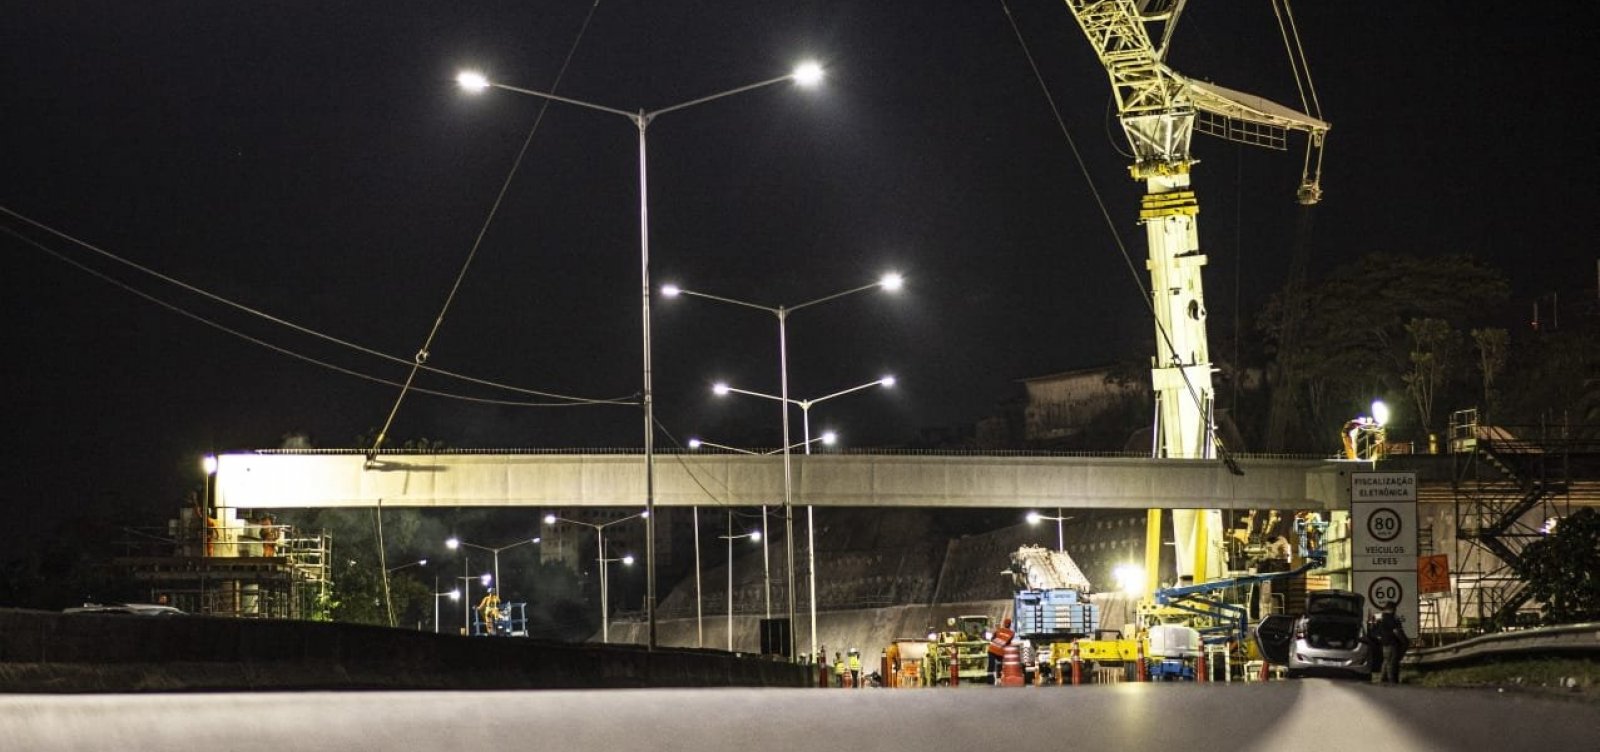 Obras alteram tráfego de veículos na BR-324 entre os viadutos de Pirajá e da Brasilgás